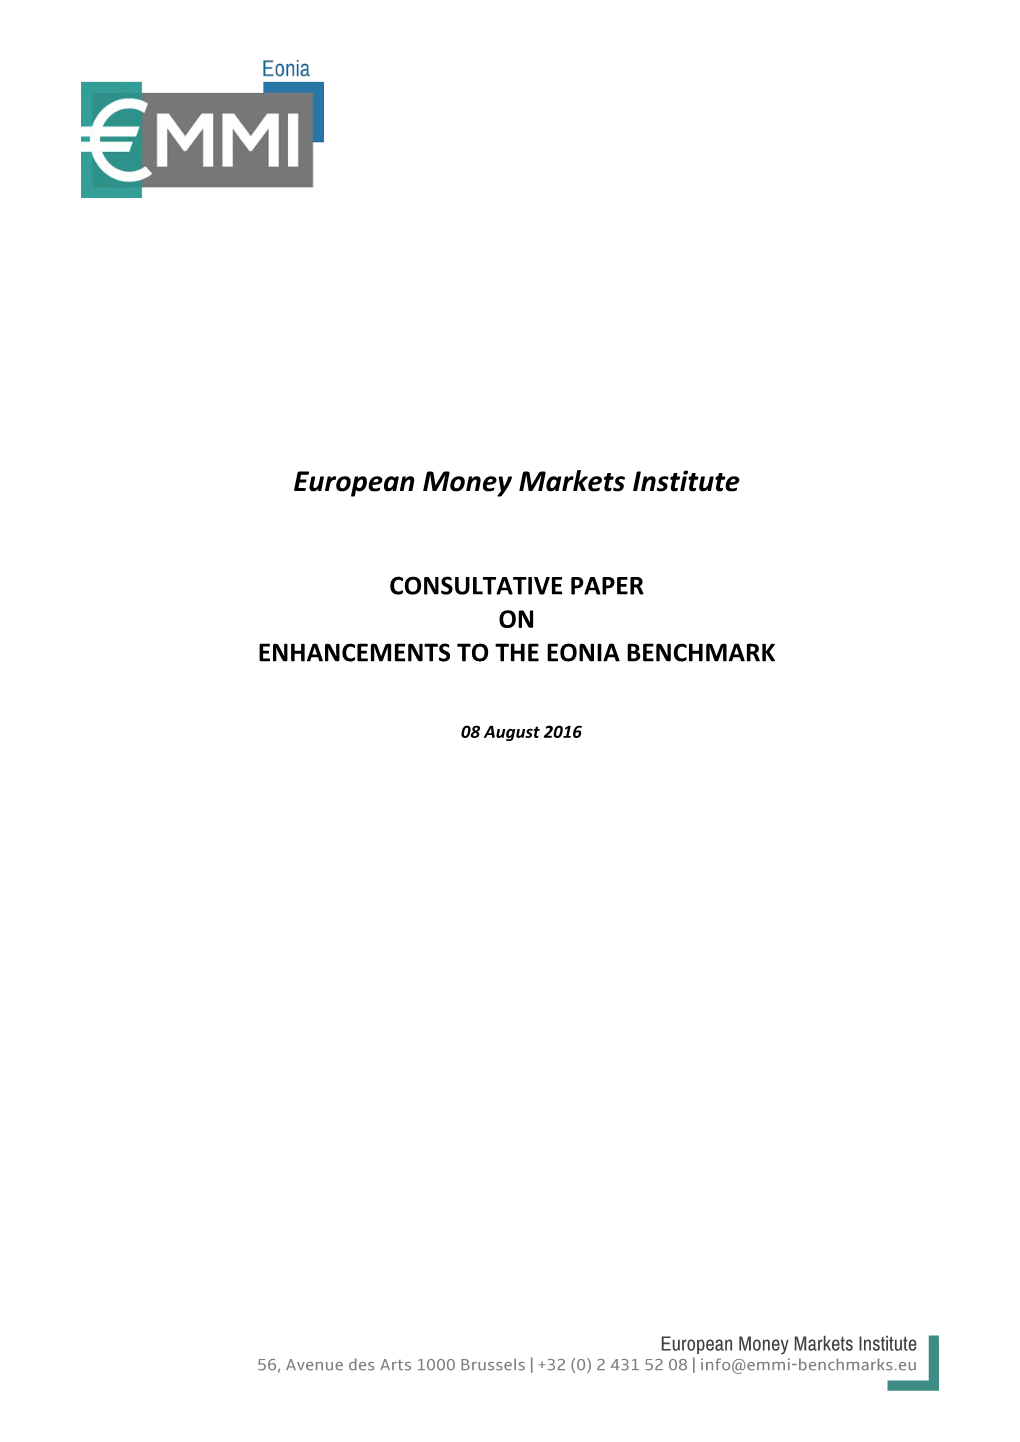 Eonia Consultative Paper